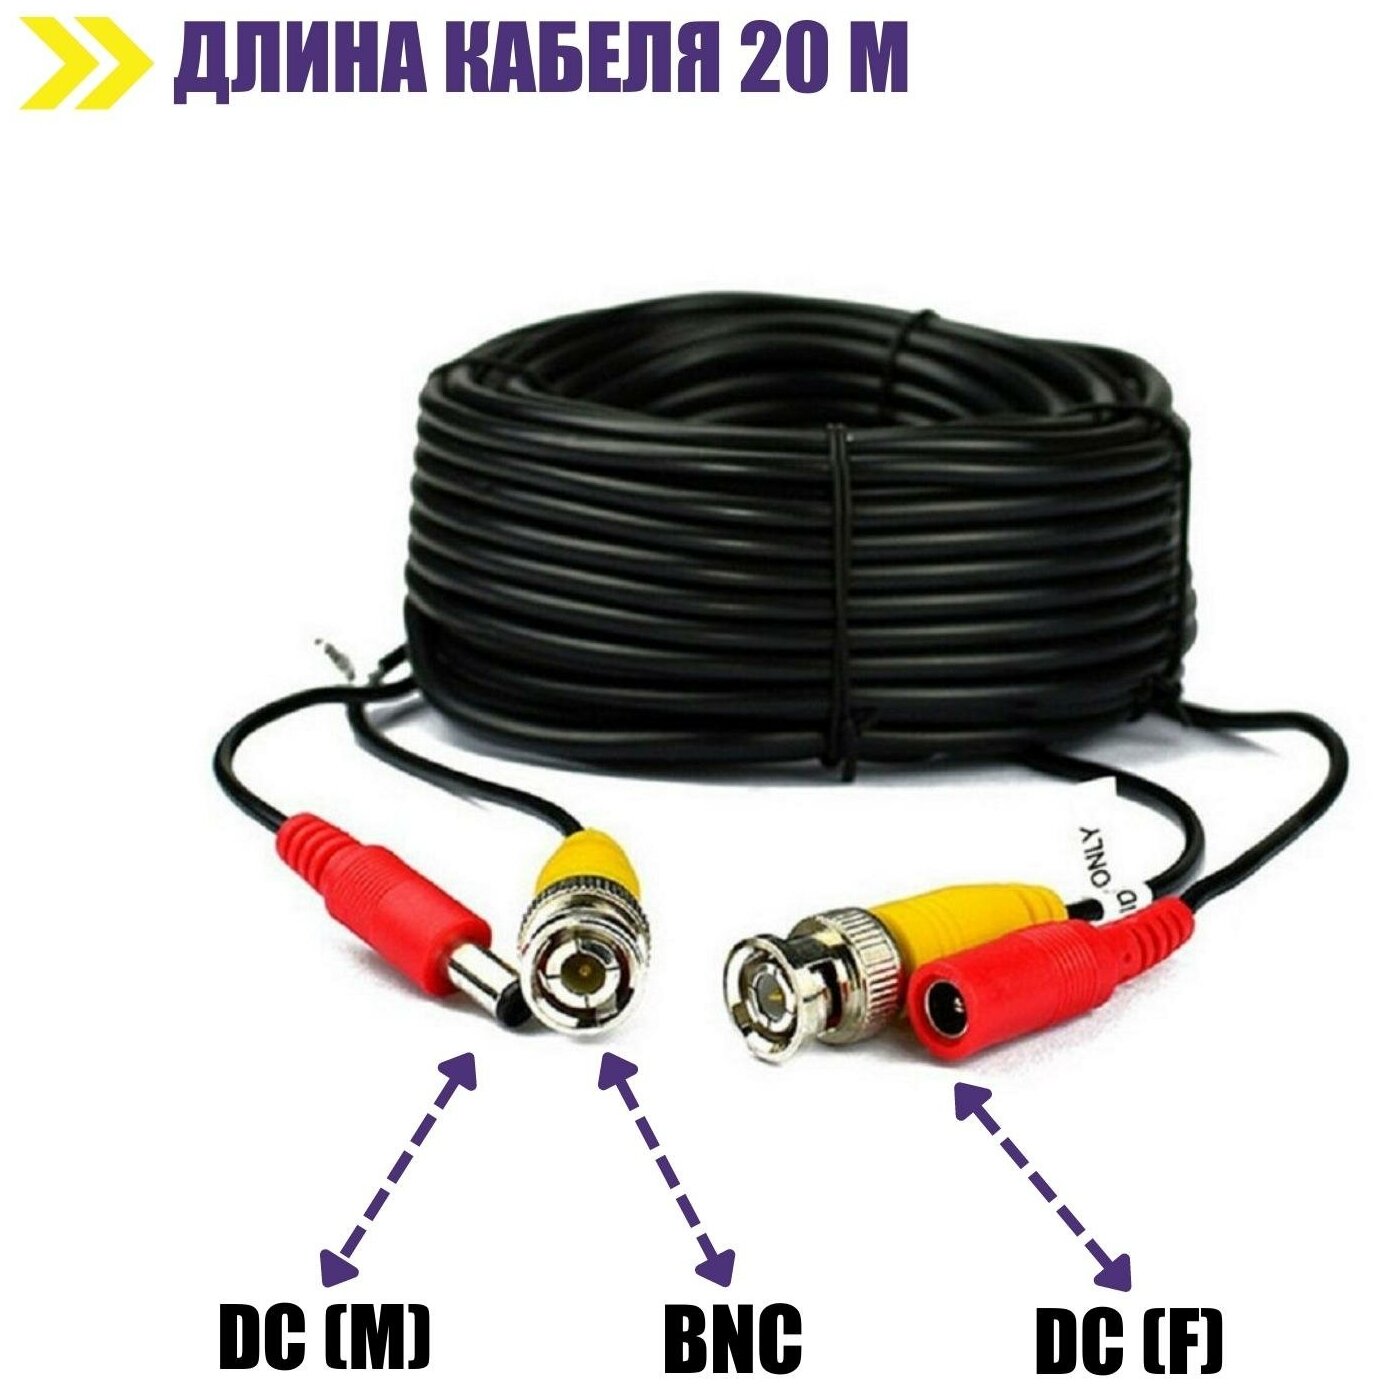 Комплект К-20 для системы видеонаблюдения: кабель BNC/DC 20 м переходники DC(мама) DC(папа) и блок питания